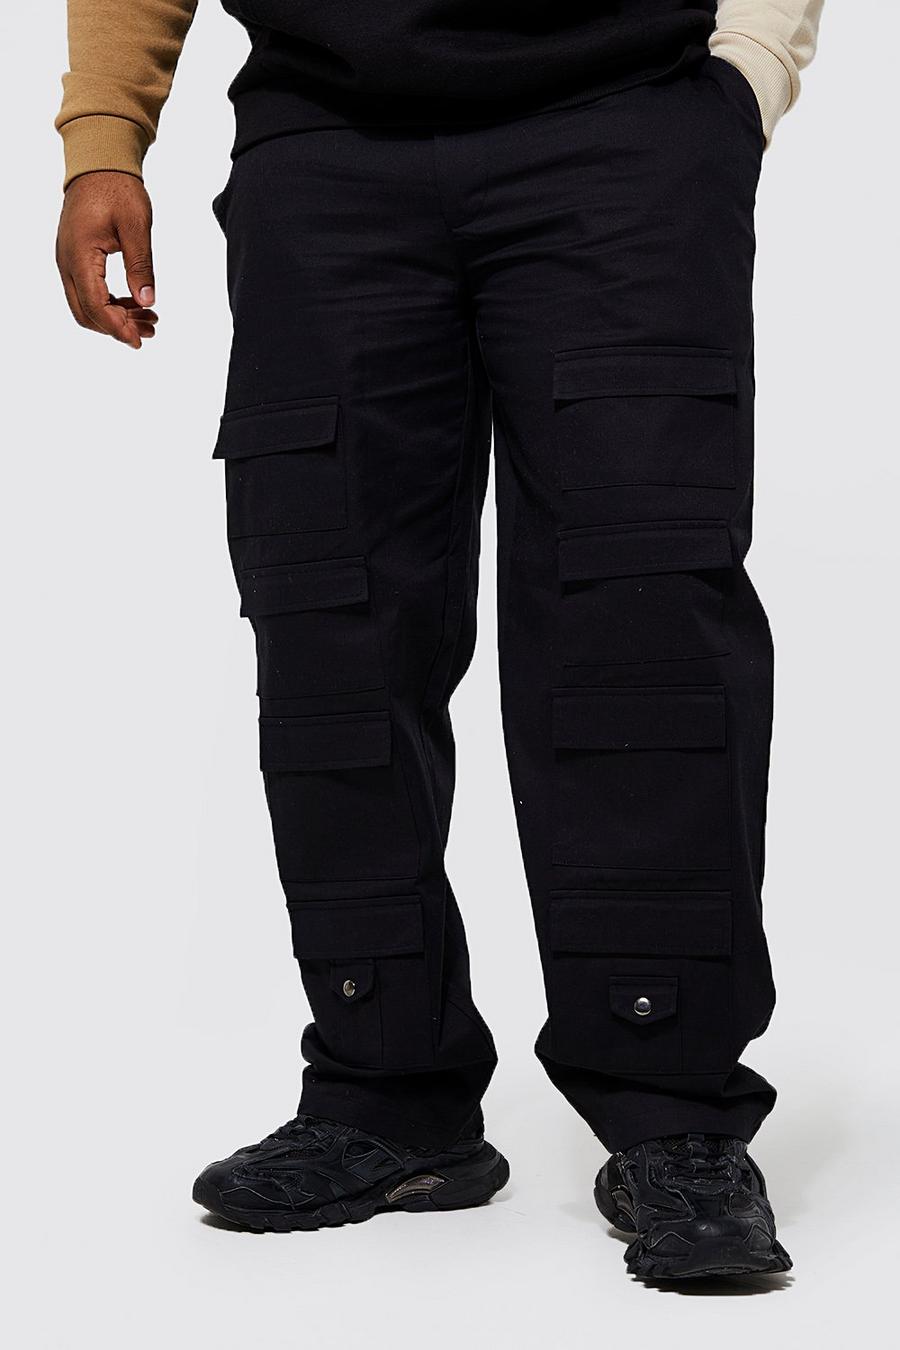 שחור negro מכנסי דגמ'ח עם כיסים ומכפלת נערמת מידות גדולות 